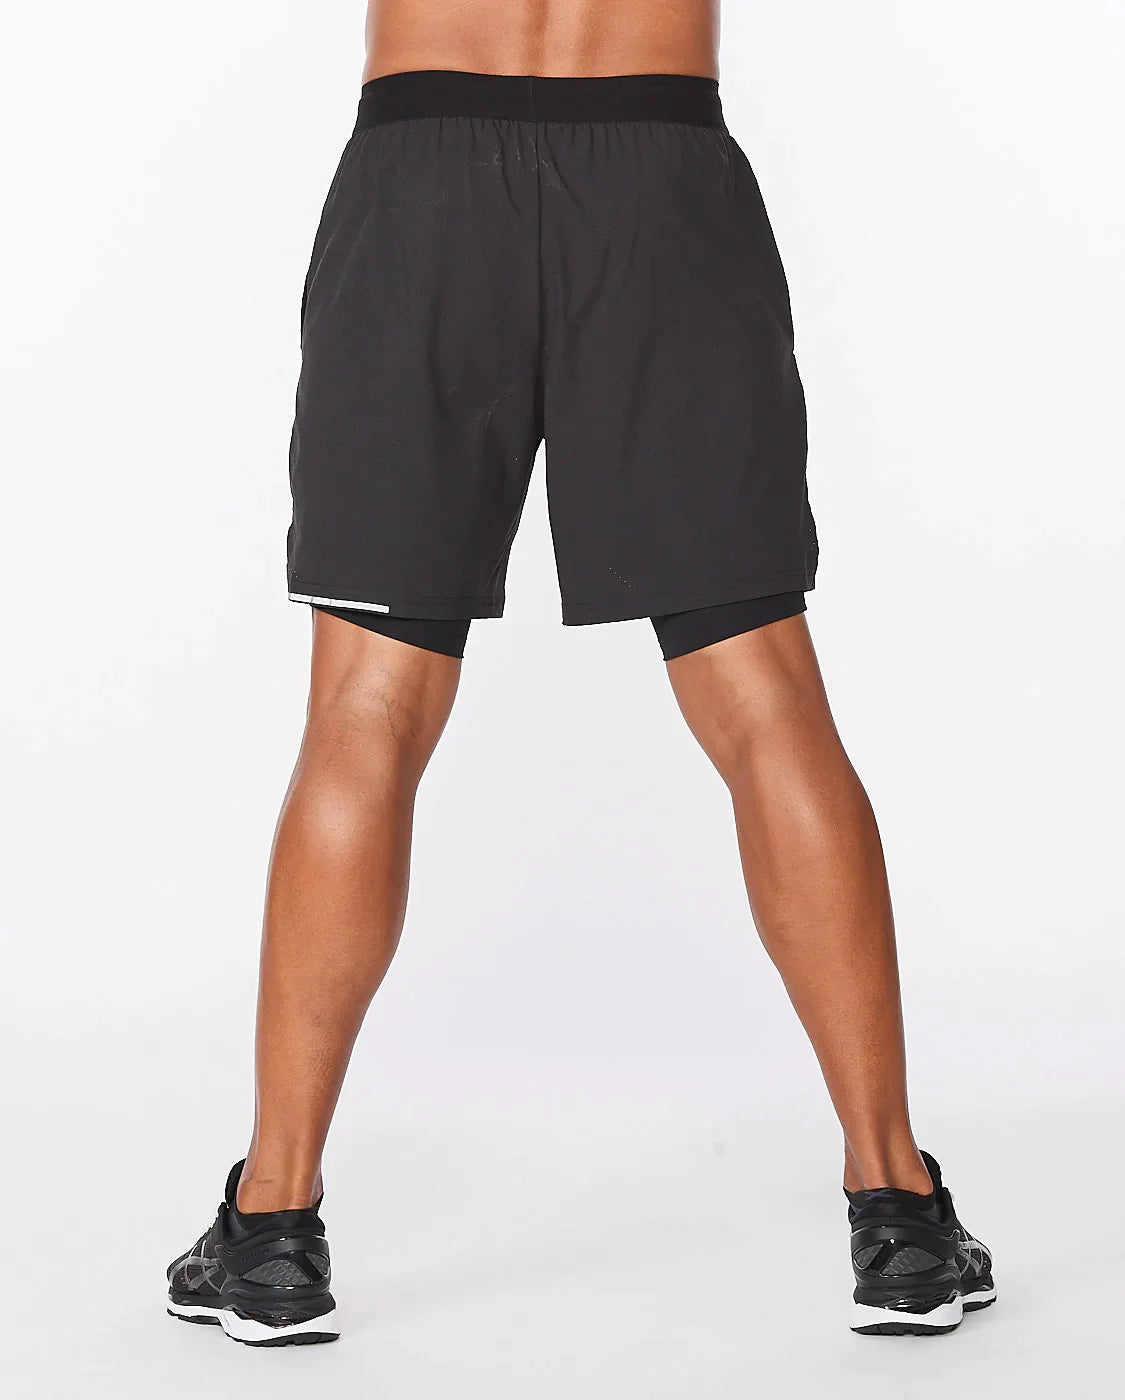 Shorts de Running con calza interior Hombre Aero 7 pulgadas - Negro reflectante - 2XU